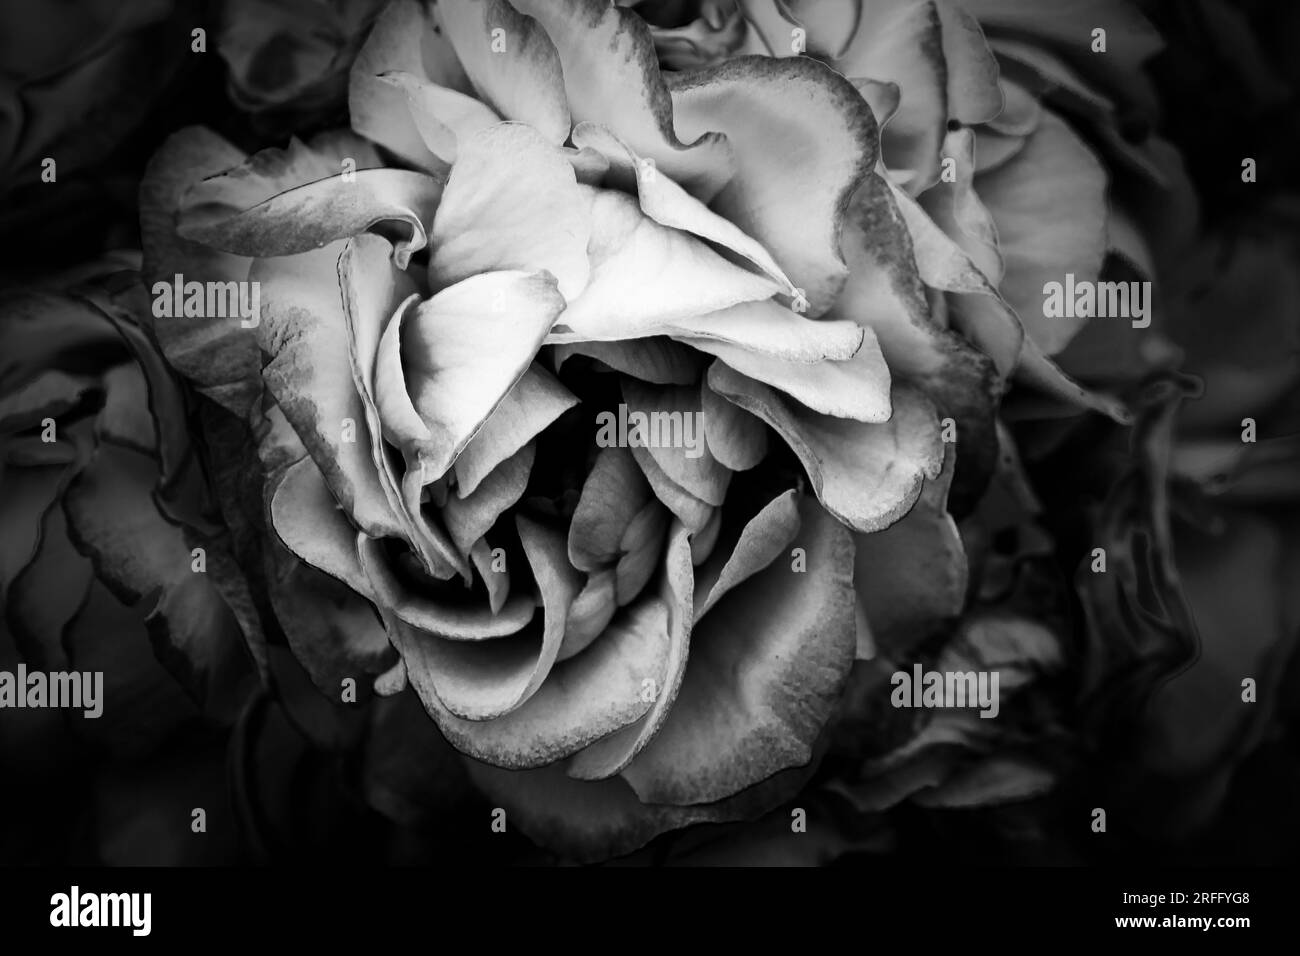 Geranium in black & white close-up Stock Photo